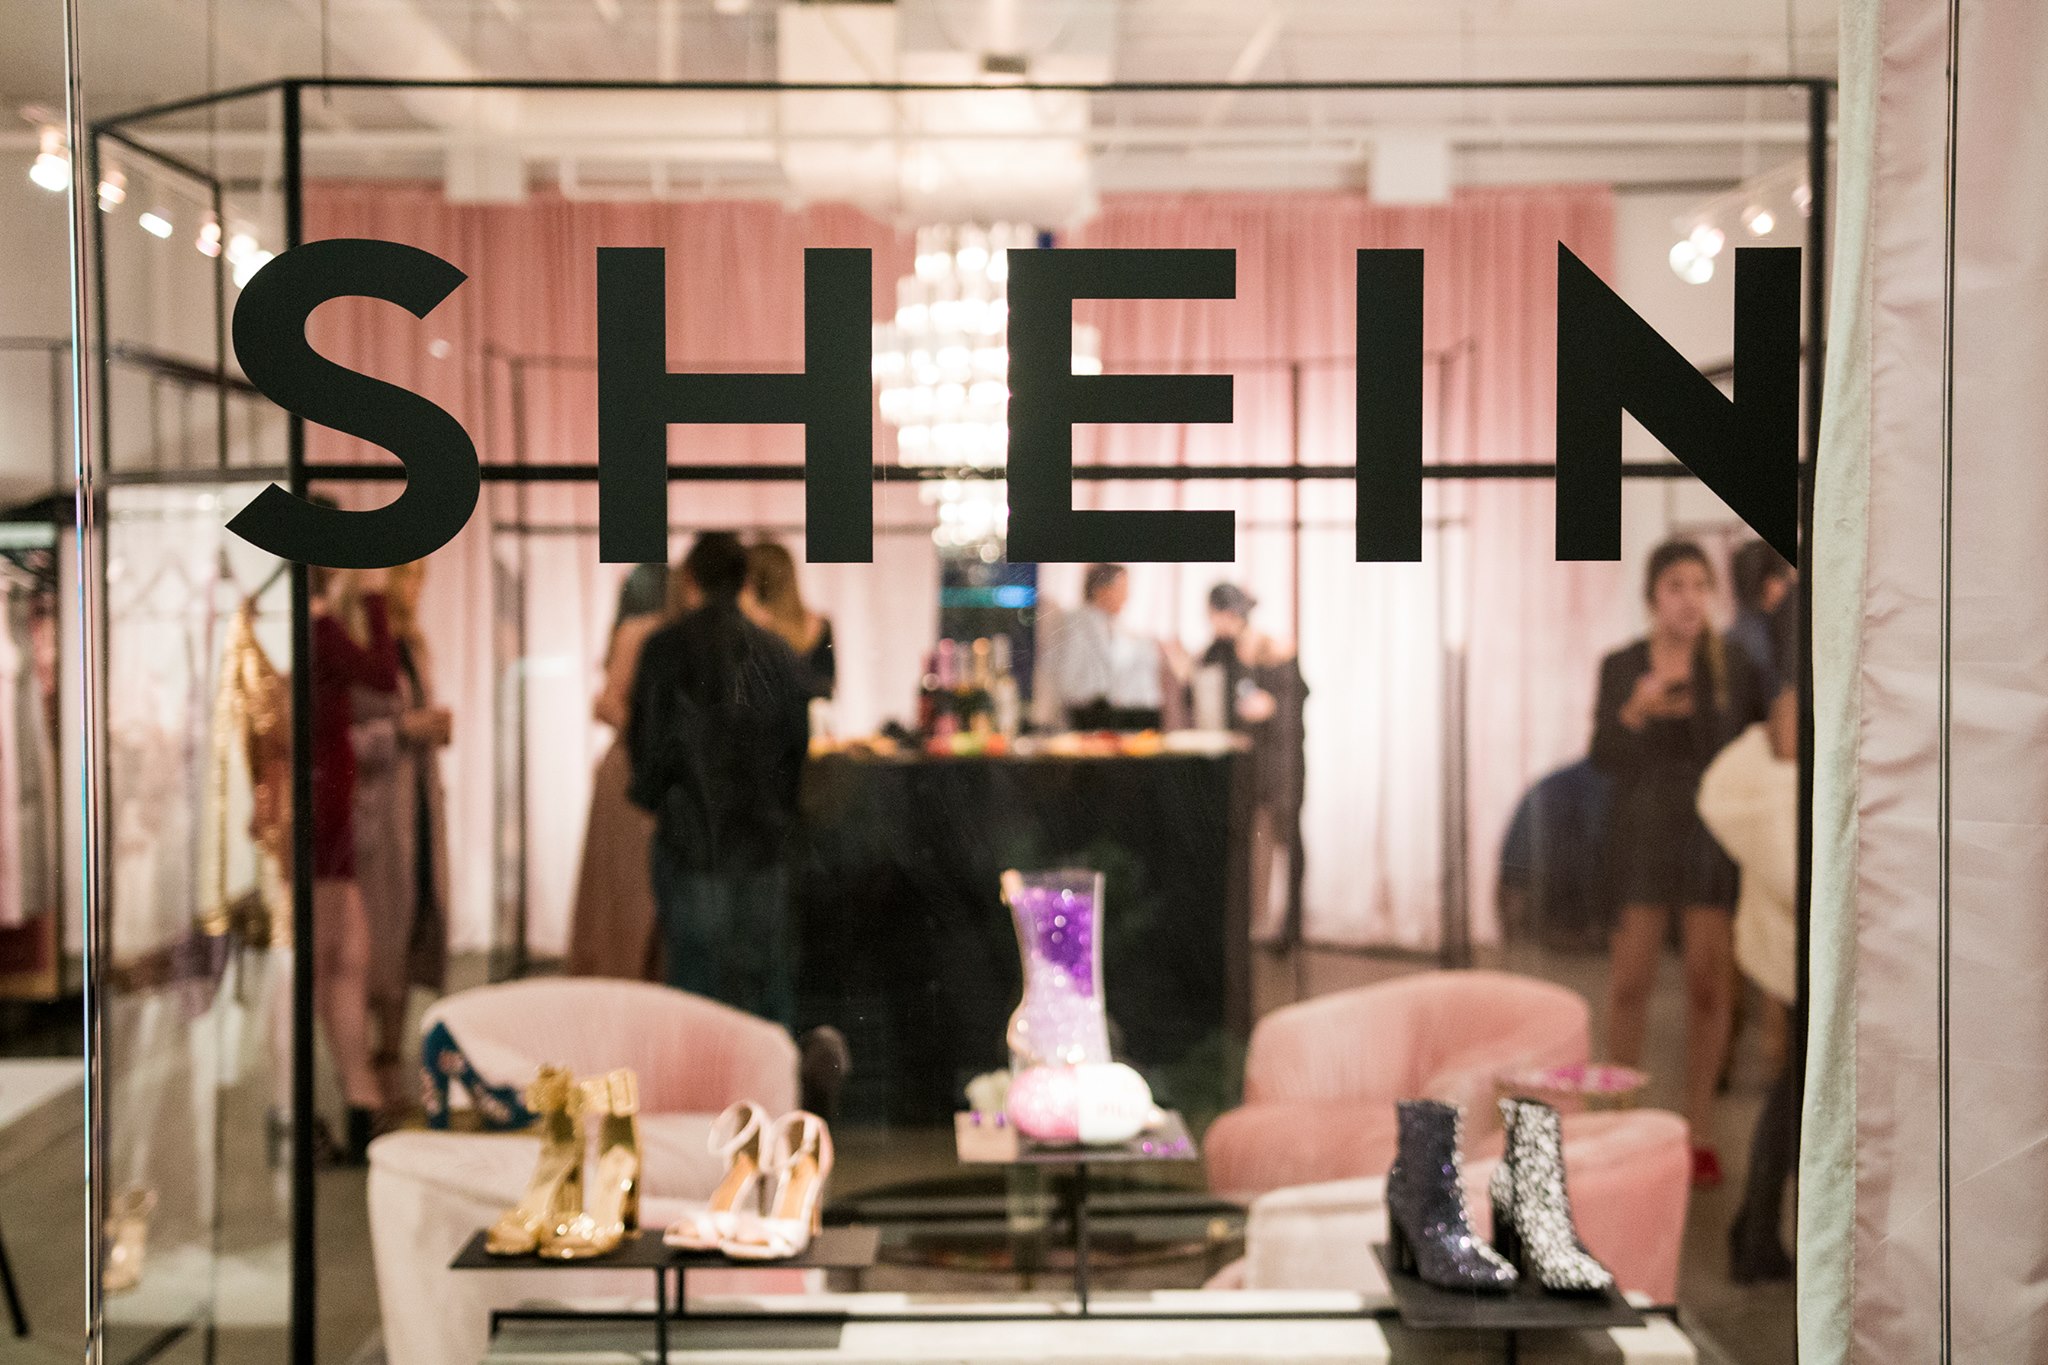 Casa de Negócios: como a Shein tem construído uma rede de fornecedores no  Brasil